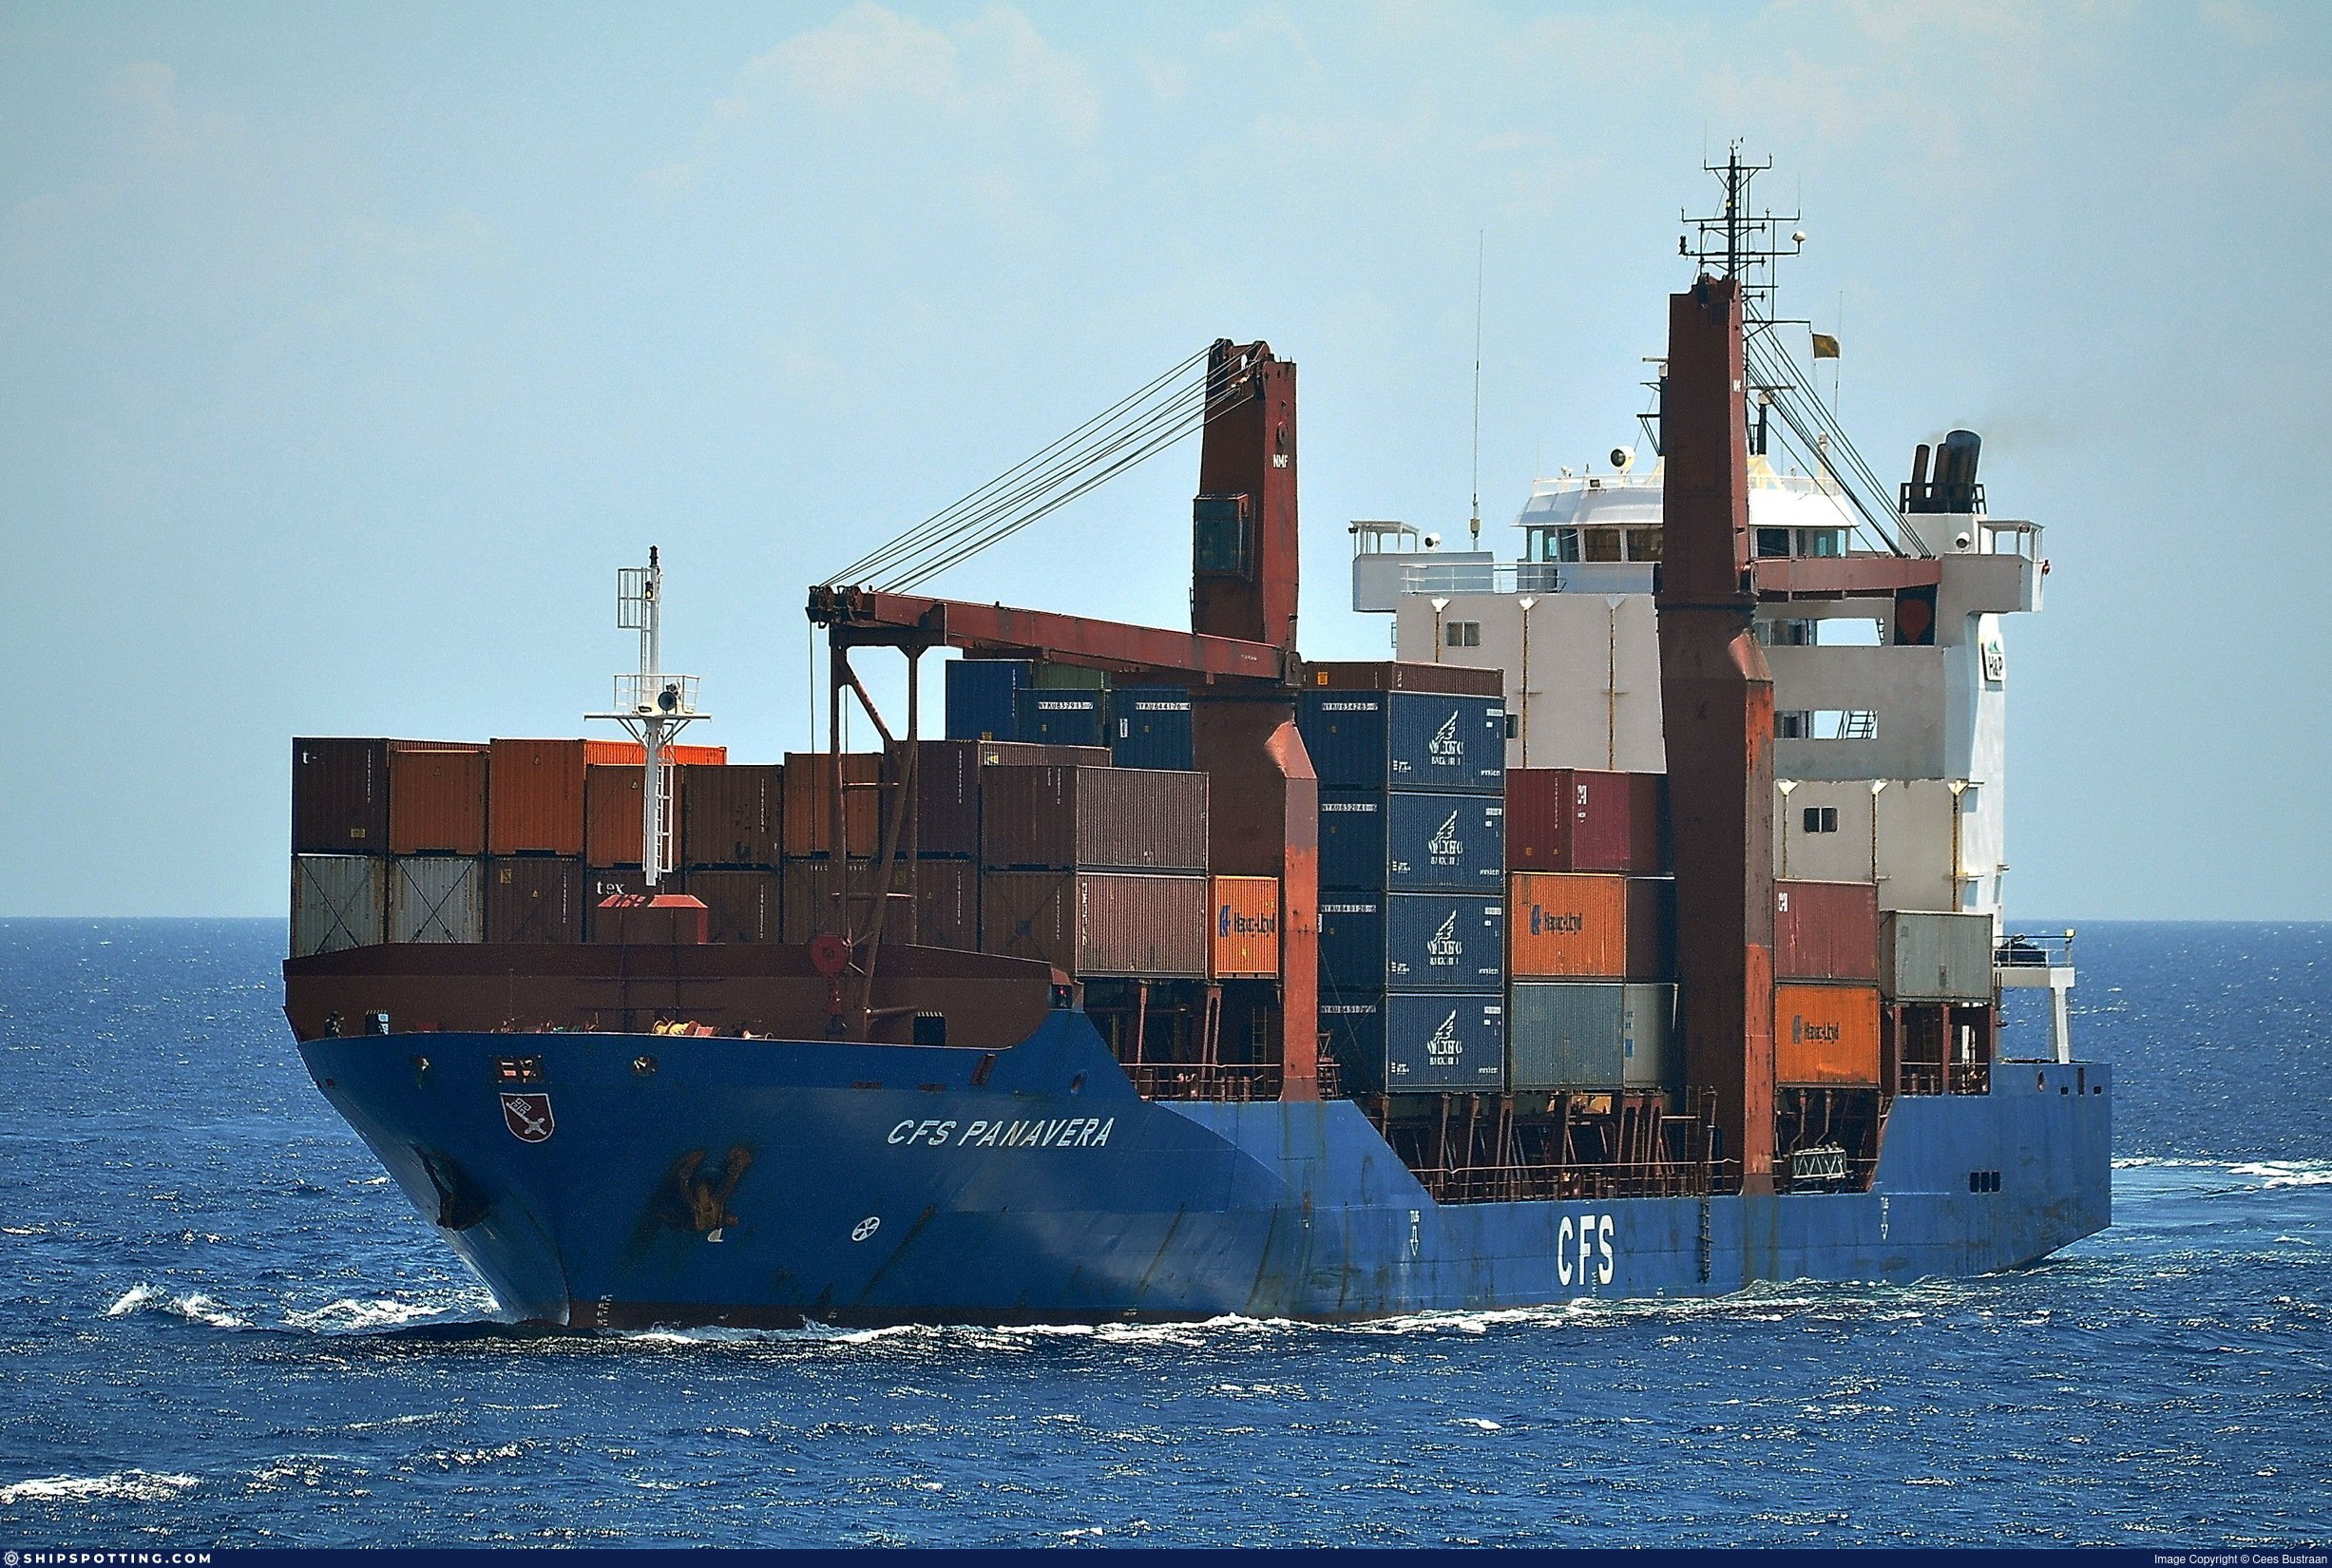 Cargo vessel. Дженерал карго судно. Сухогруз — «Дженерал карго». General Cargo судно. Дженерал карго судно 30 метров.